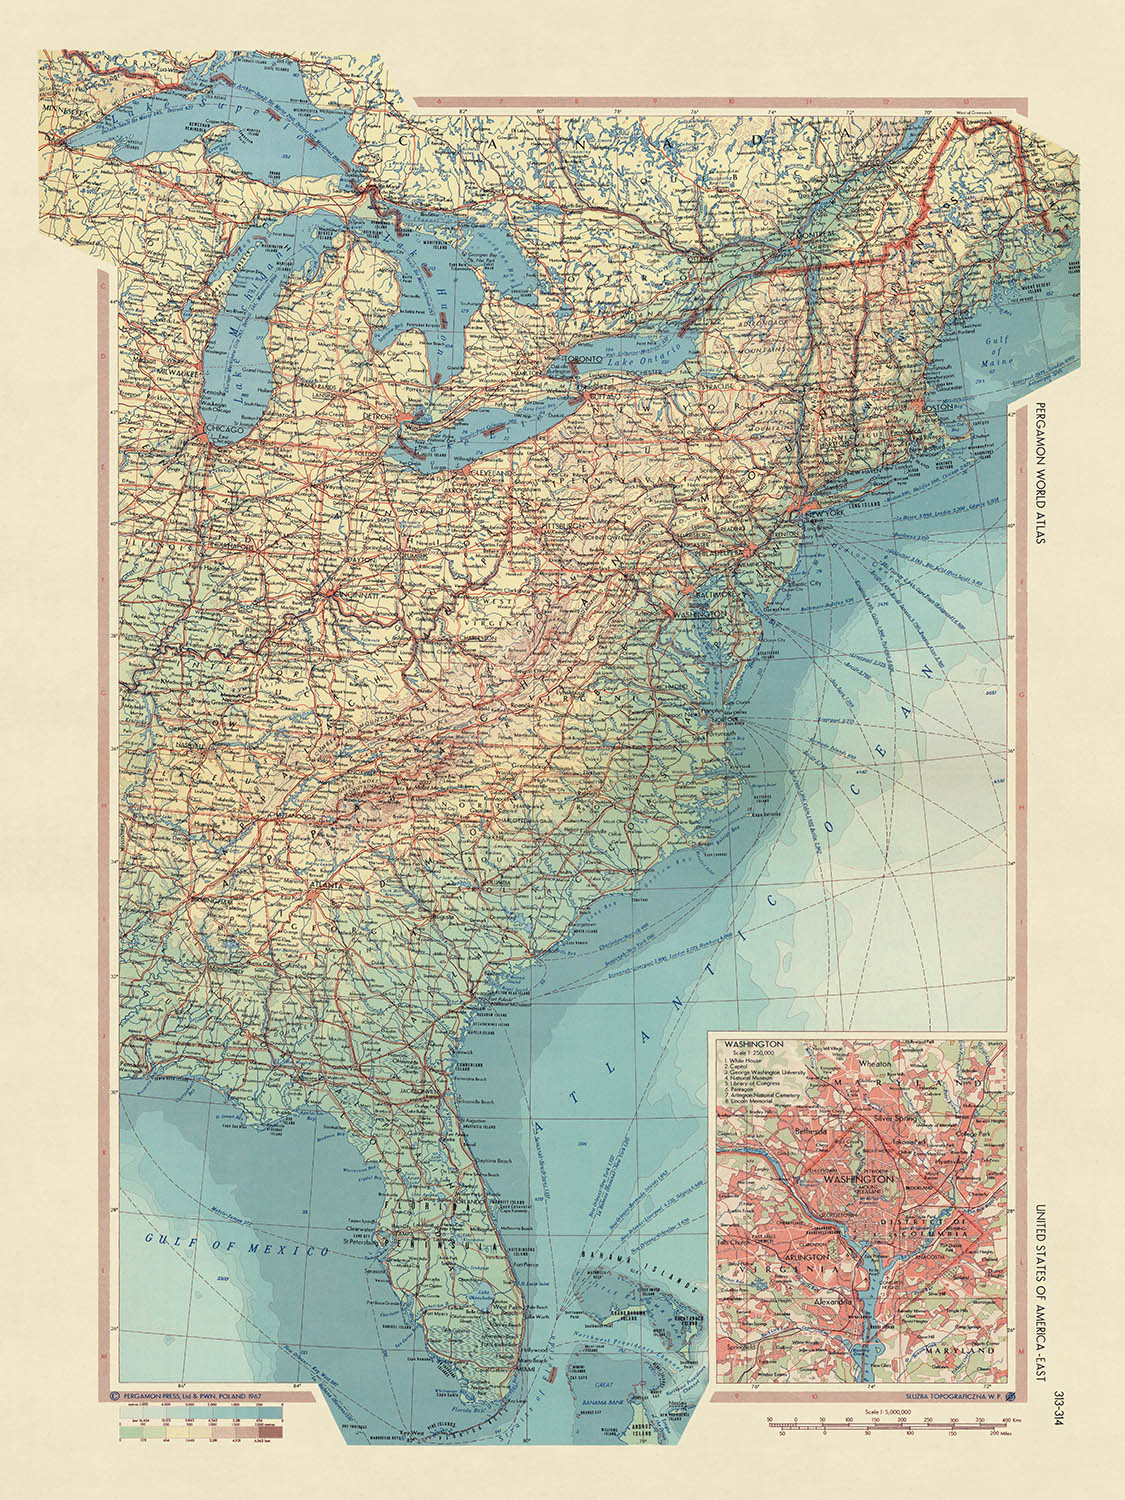 Mapa antiguo de Estados Unidos realizado por el Servicio de Topografía del Ejército Polaco, 1967: Nueva York, Chicago, Washington DC, Grandes Lagos, Río Mississippi